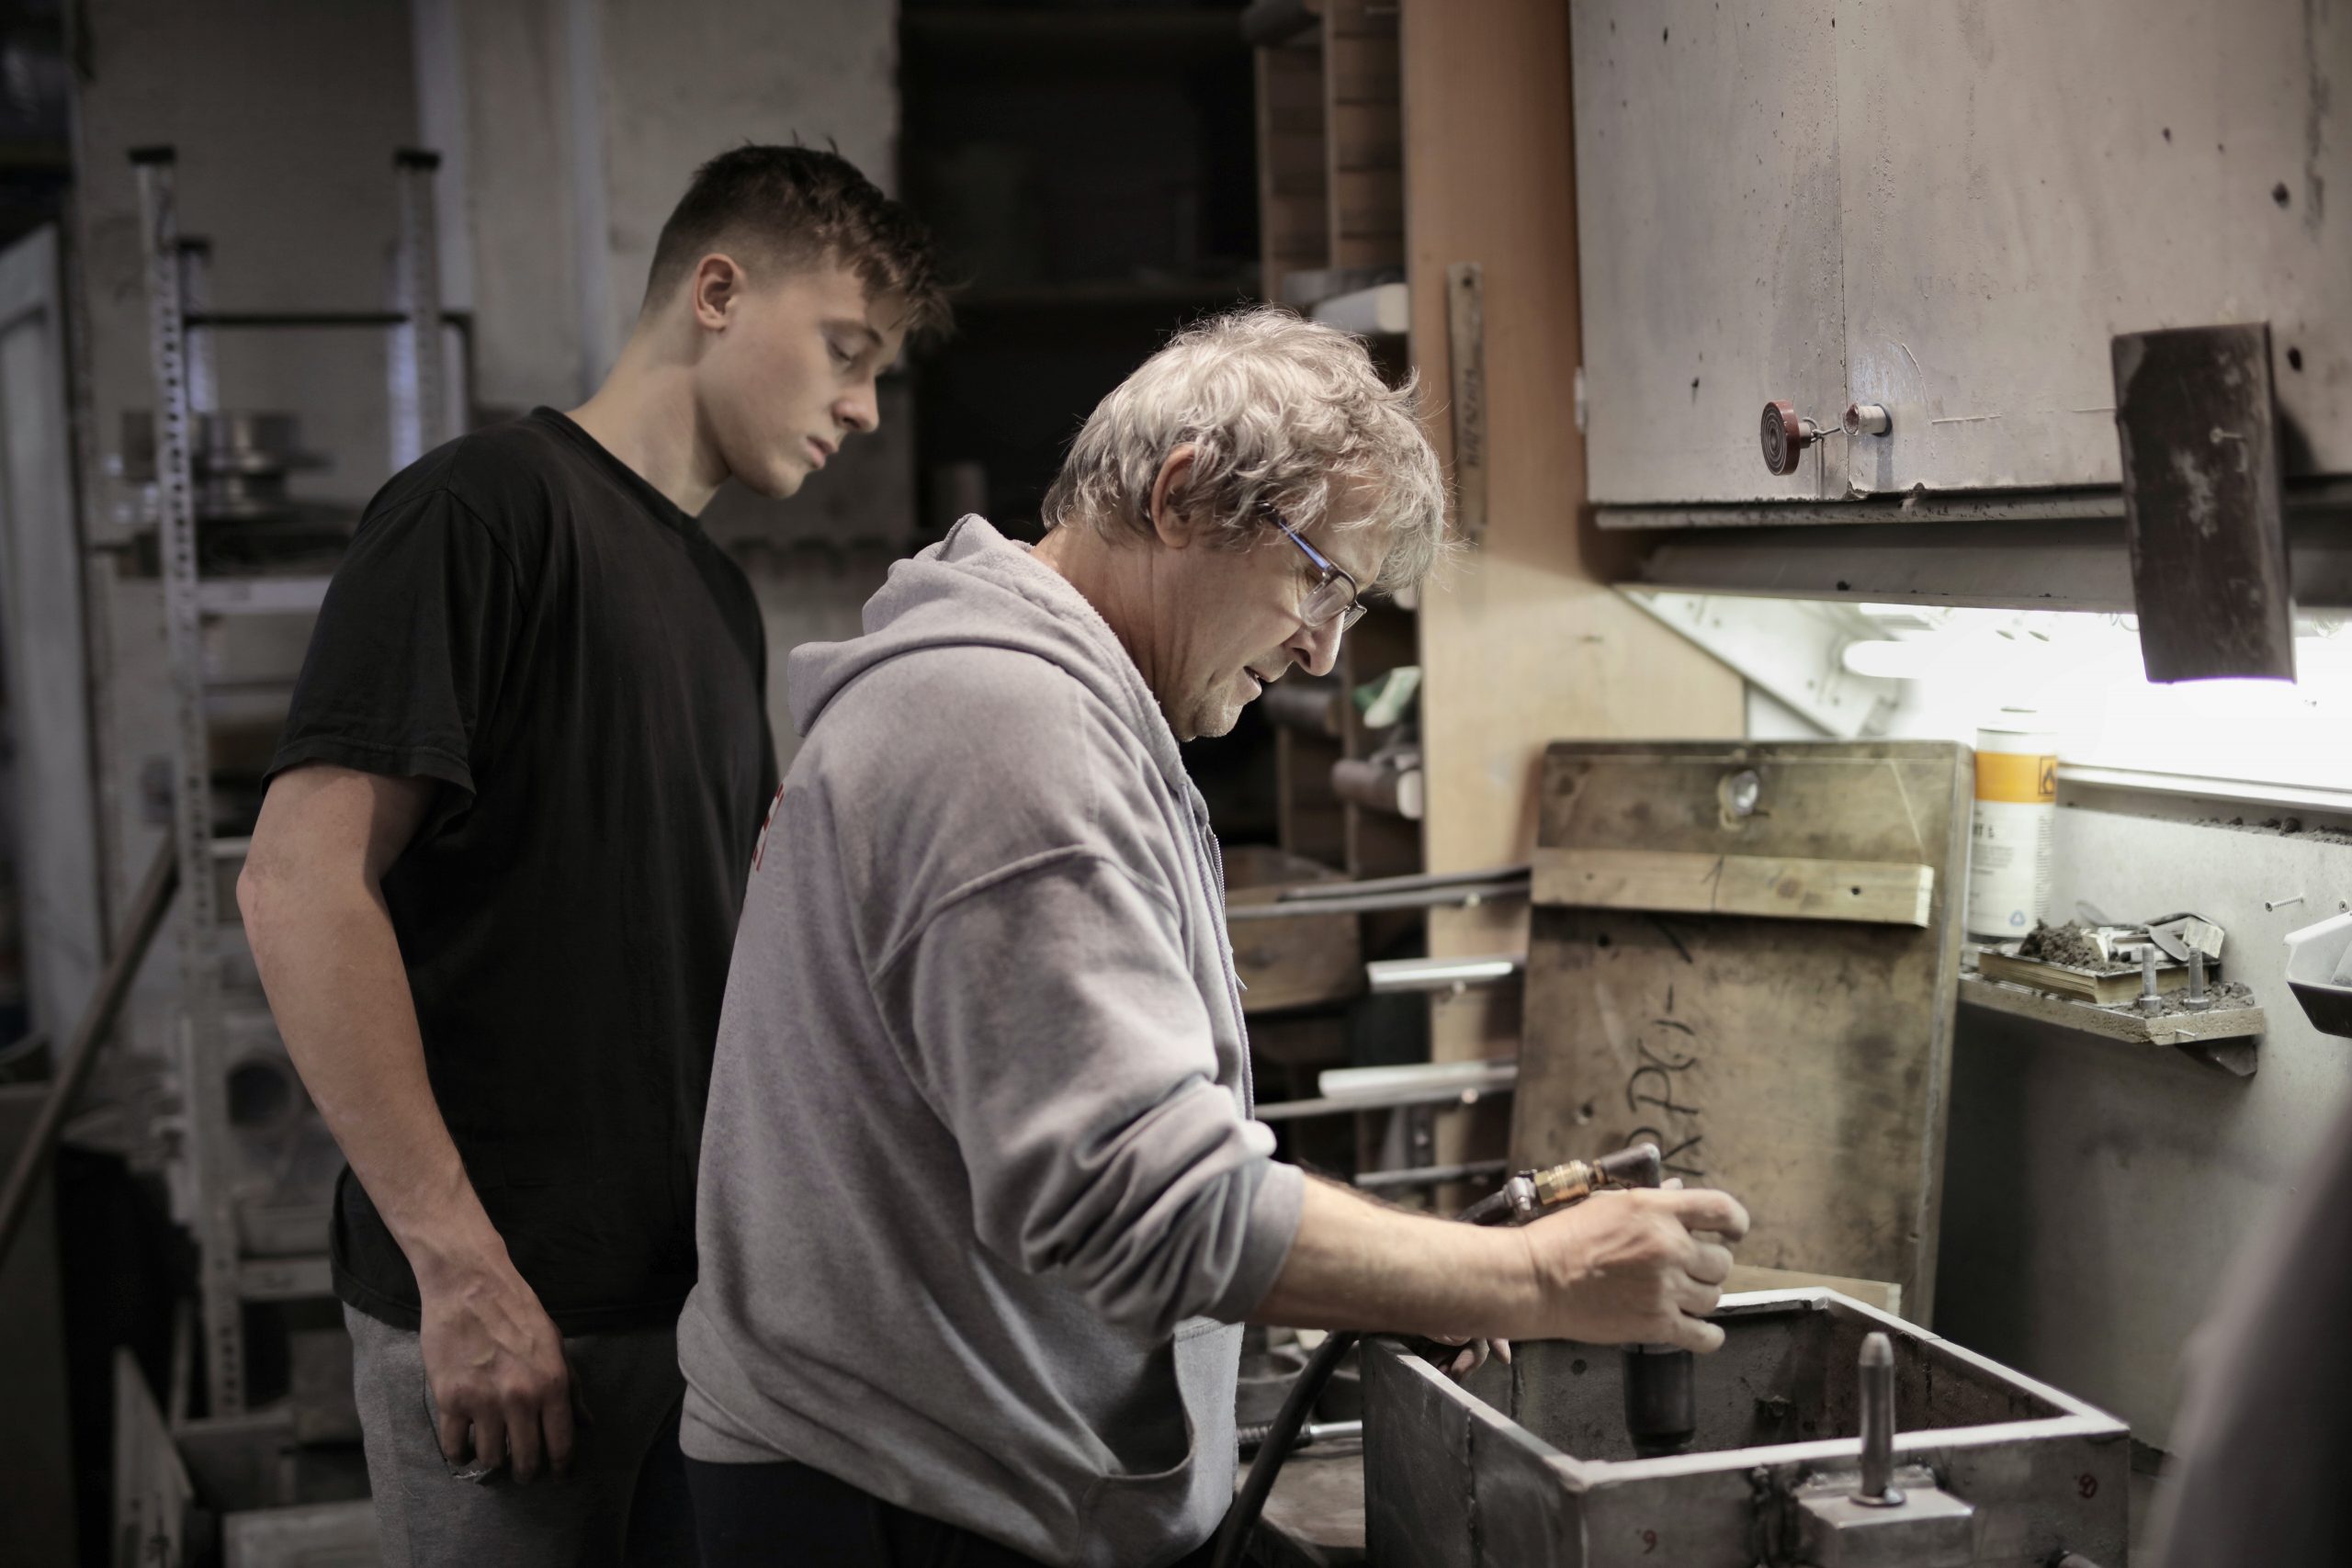 Bild von einem jungen und einem älteren Mann in einer Werkstatt. Der ältere Mann zeigt dem jungen Mann den Ablauf einer Arbeitstätigkeit.